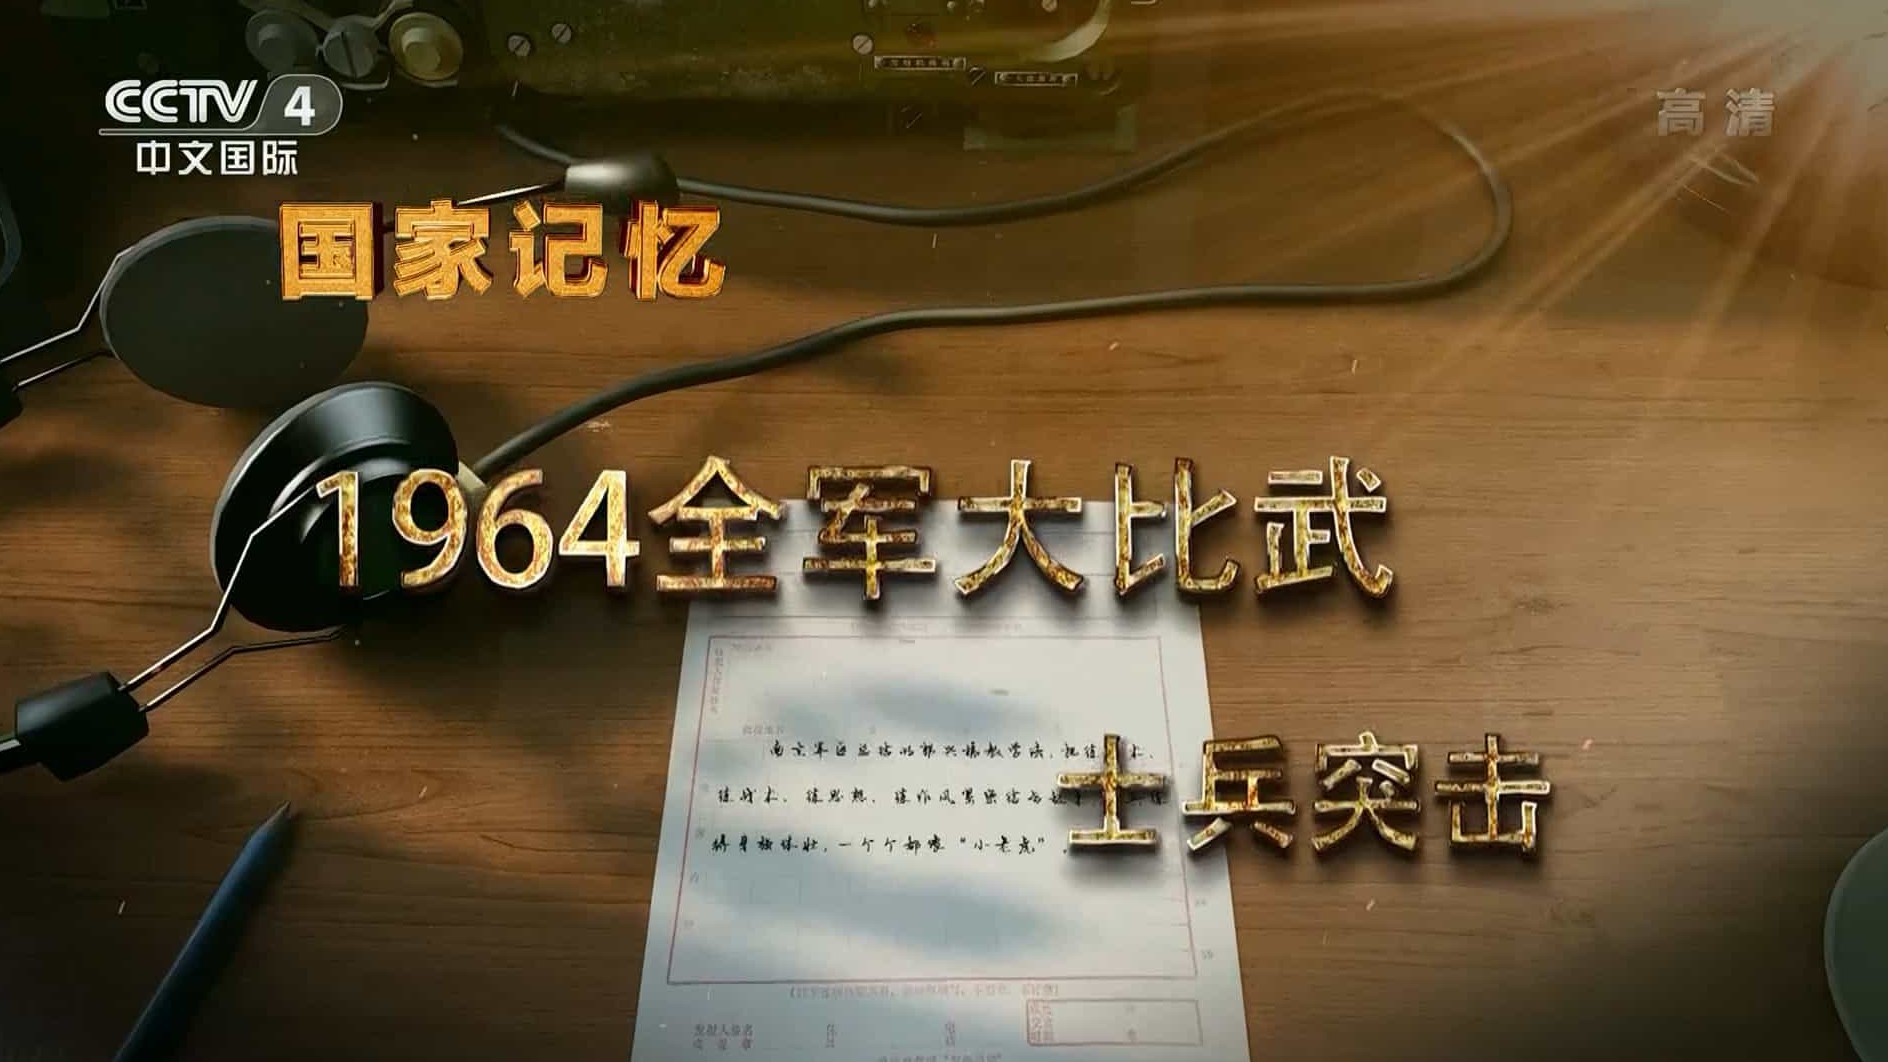 央视国家记忆系列《一九六四全军大比武 2017》汉语中字 1080i